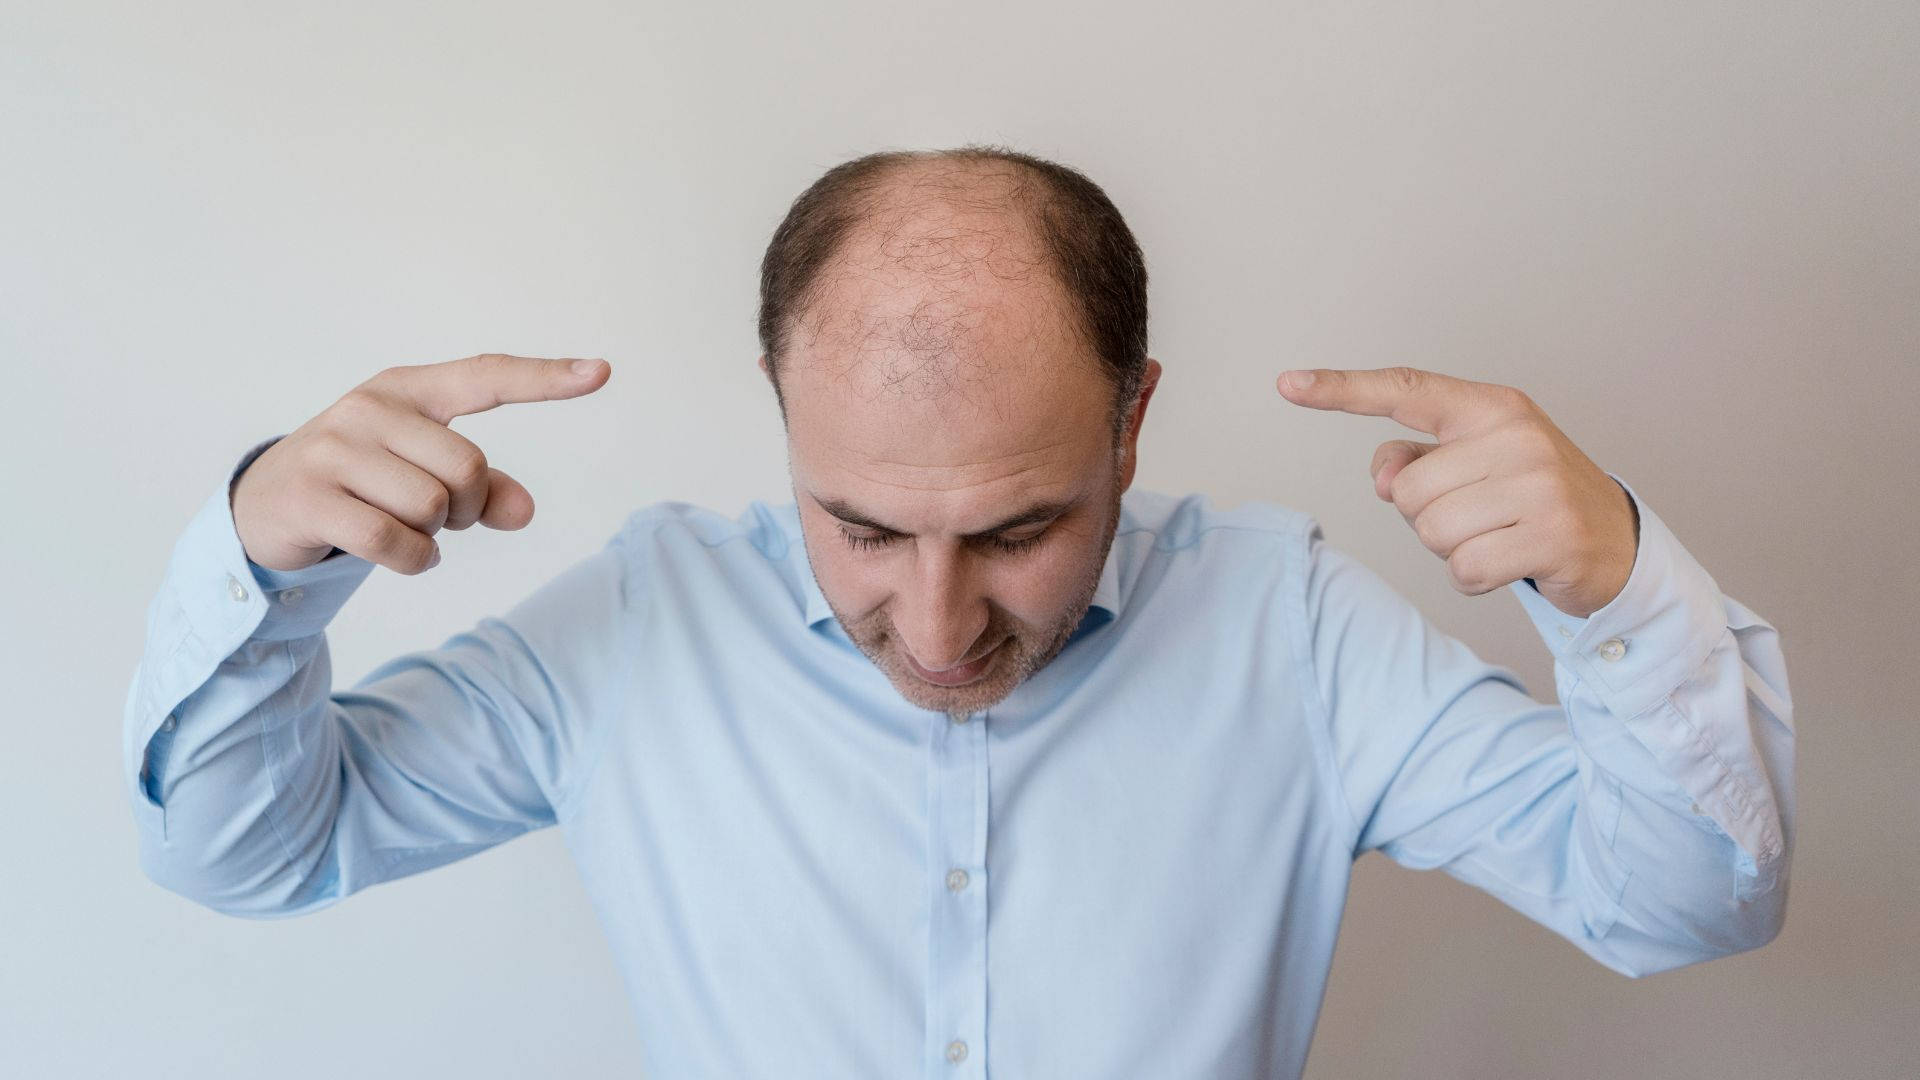 Bald Man Pointing At His Head Wallpaper